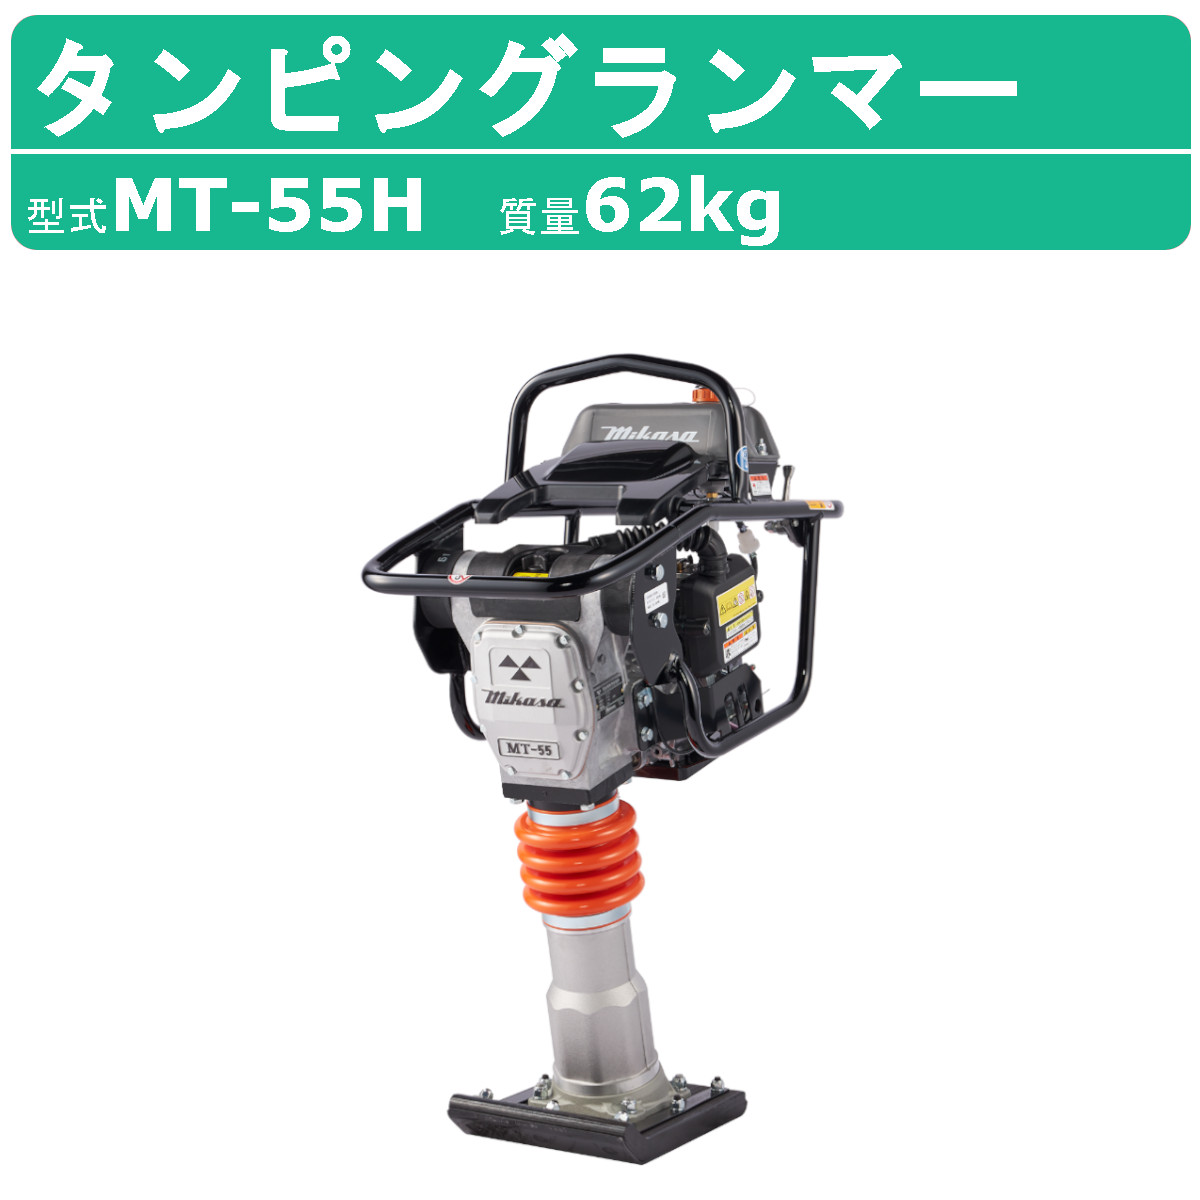 三笠産業 タンピングランマー MT-55H 転圧機 ランマー 締め固め 転圧 